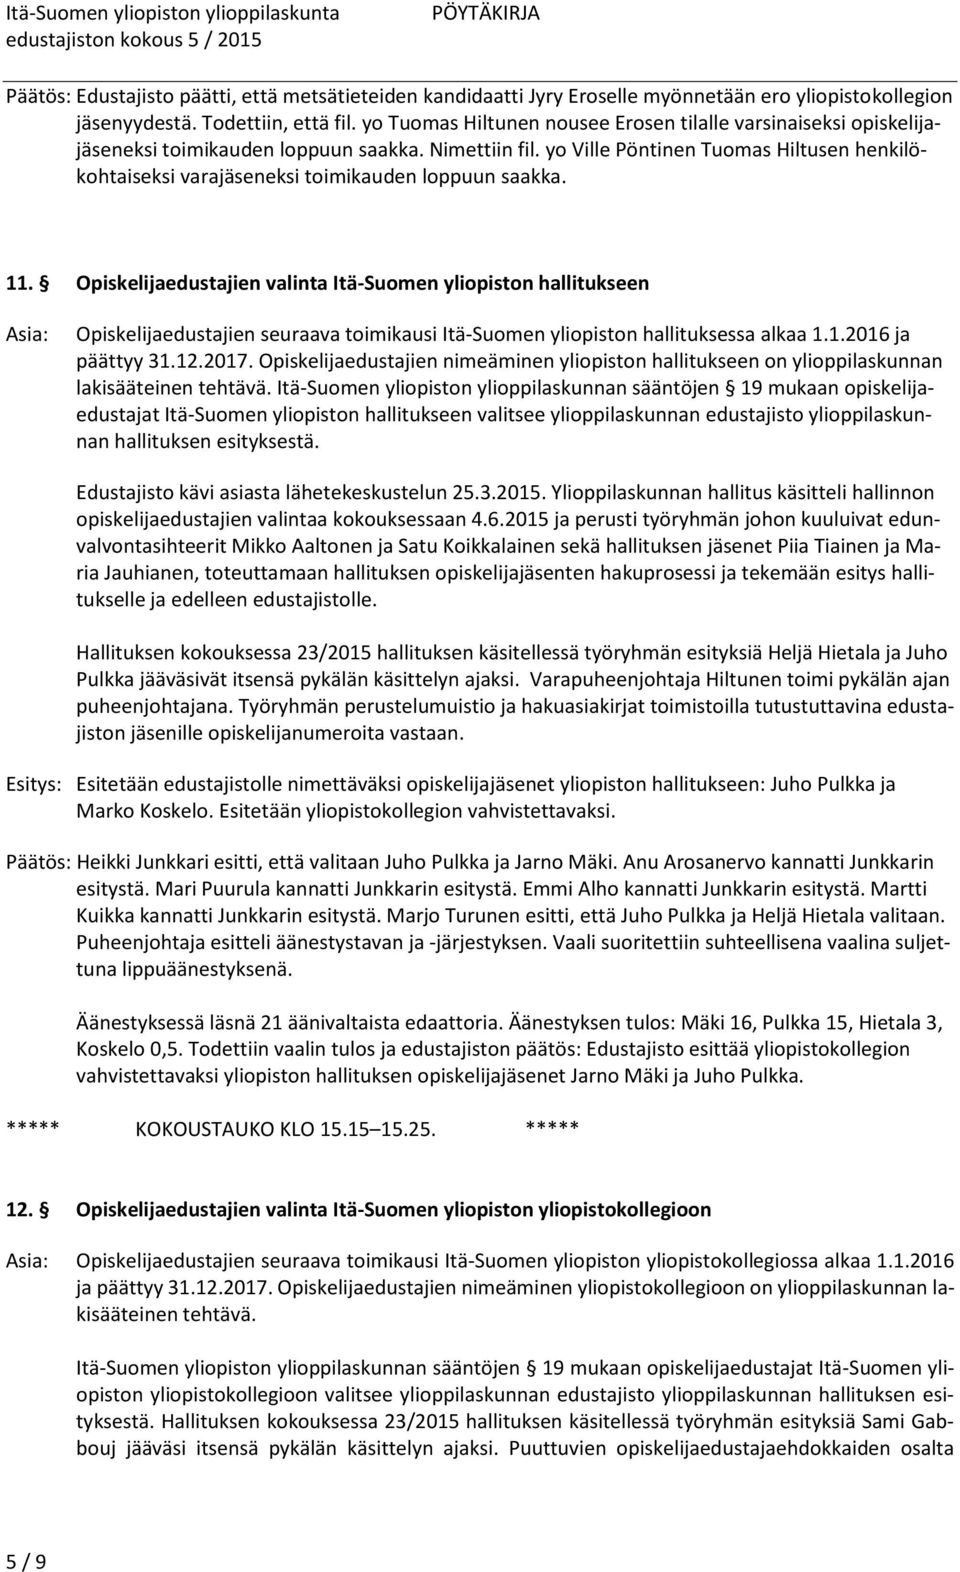 yo Ville Pöntinen Tuomas Hiltusen henkilökohtaiseksi varajäseneksi toimikauden loppuun saakka. 11.